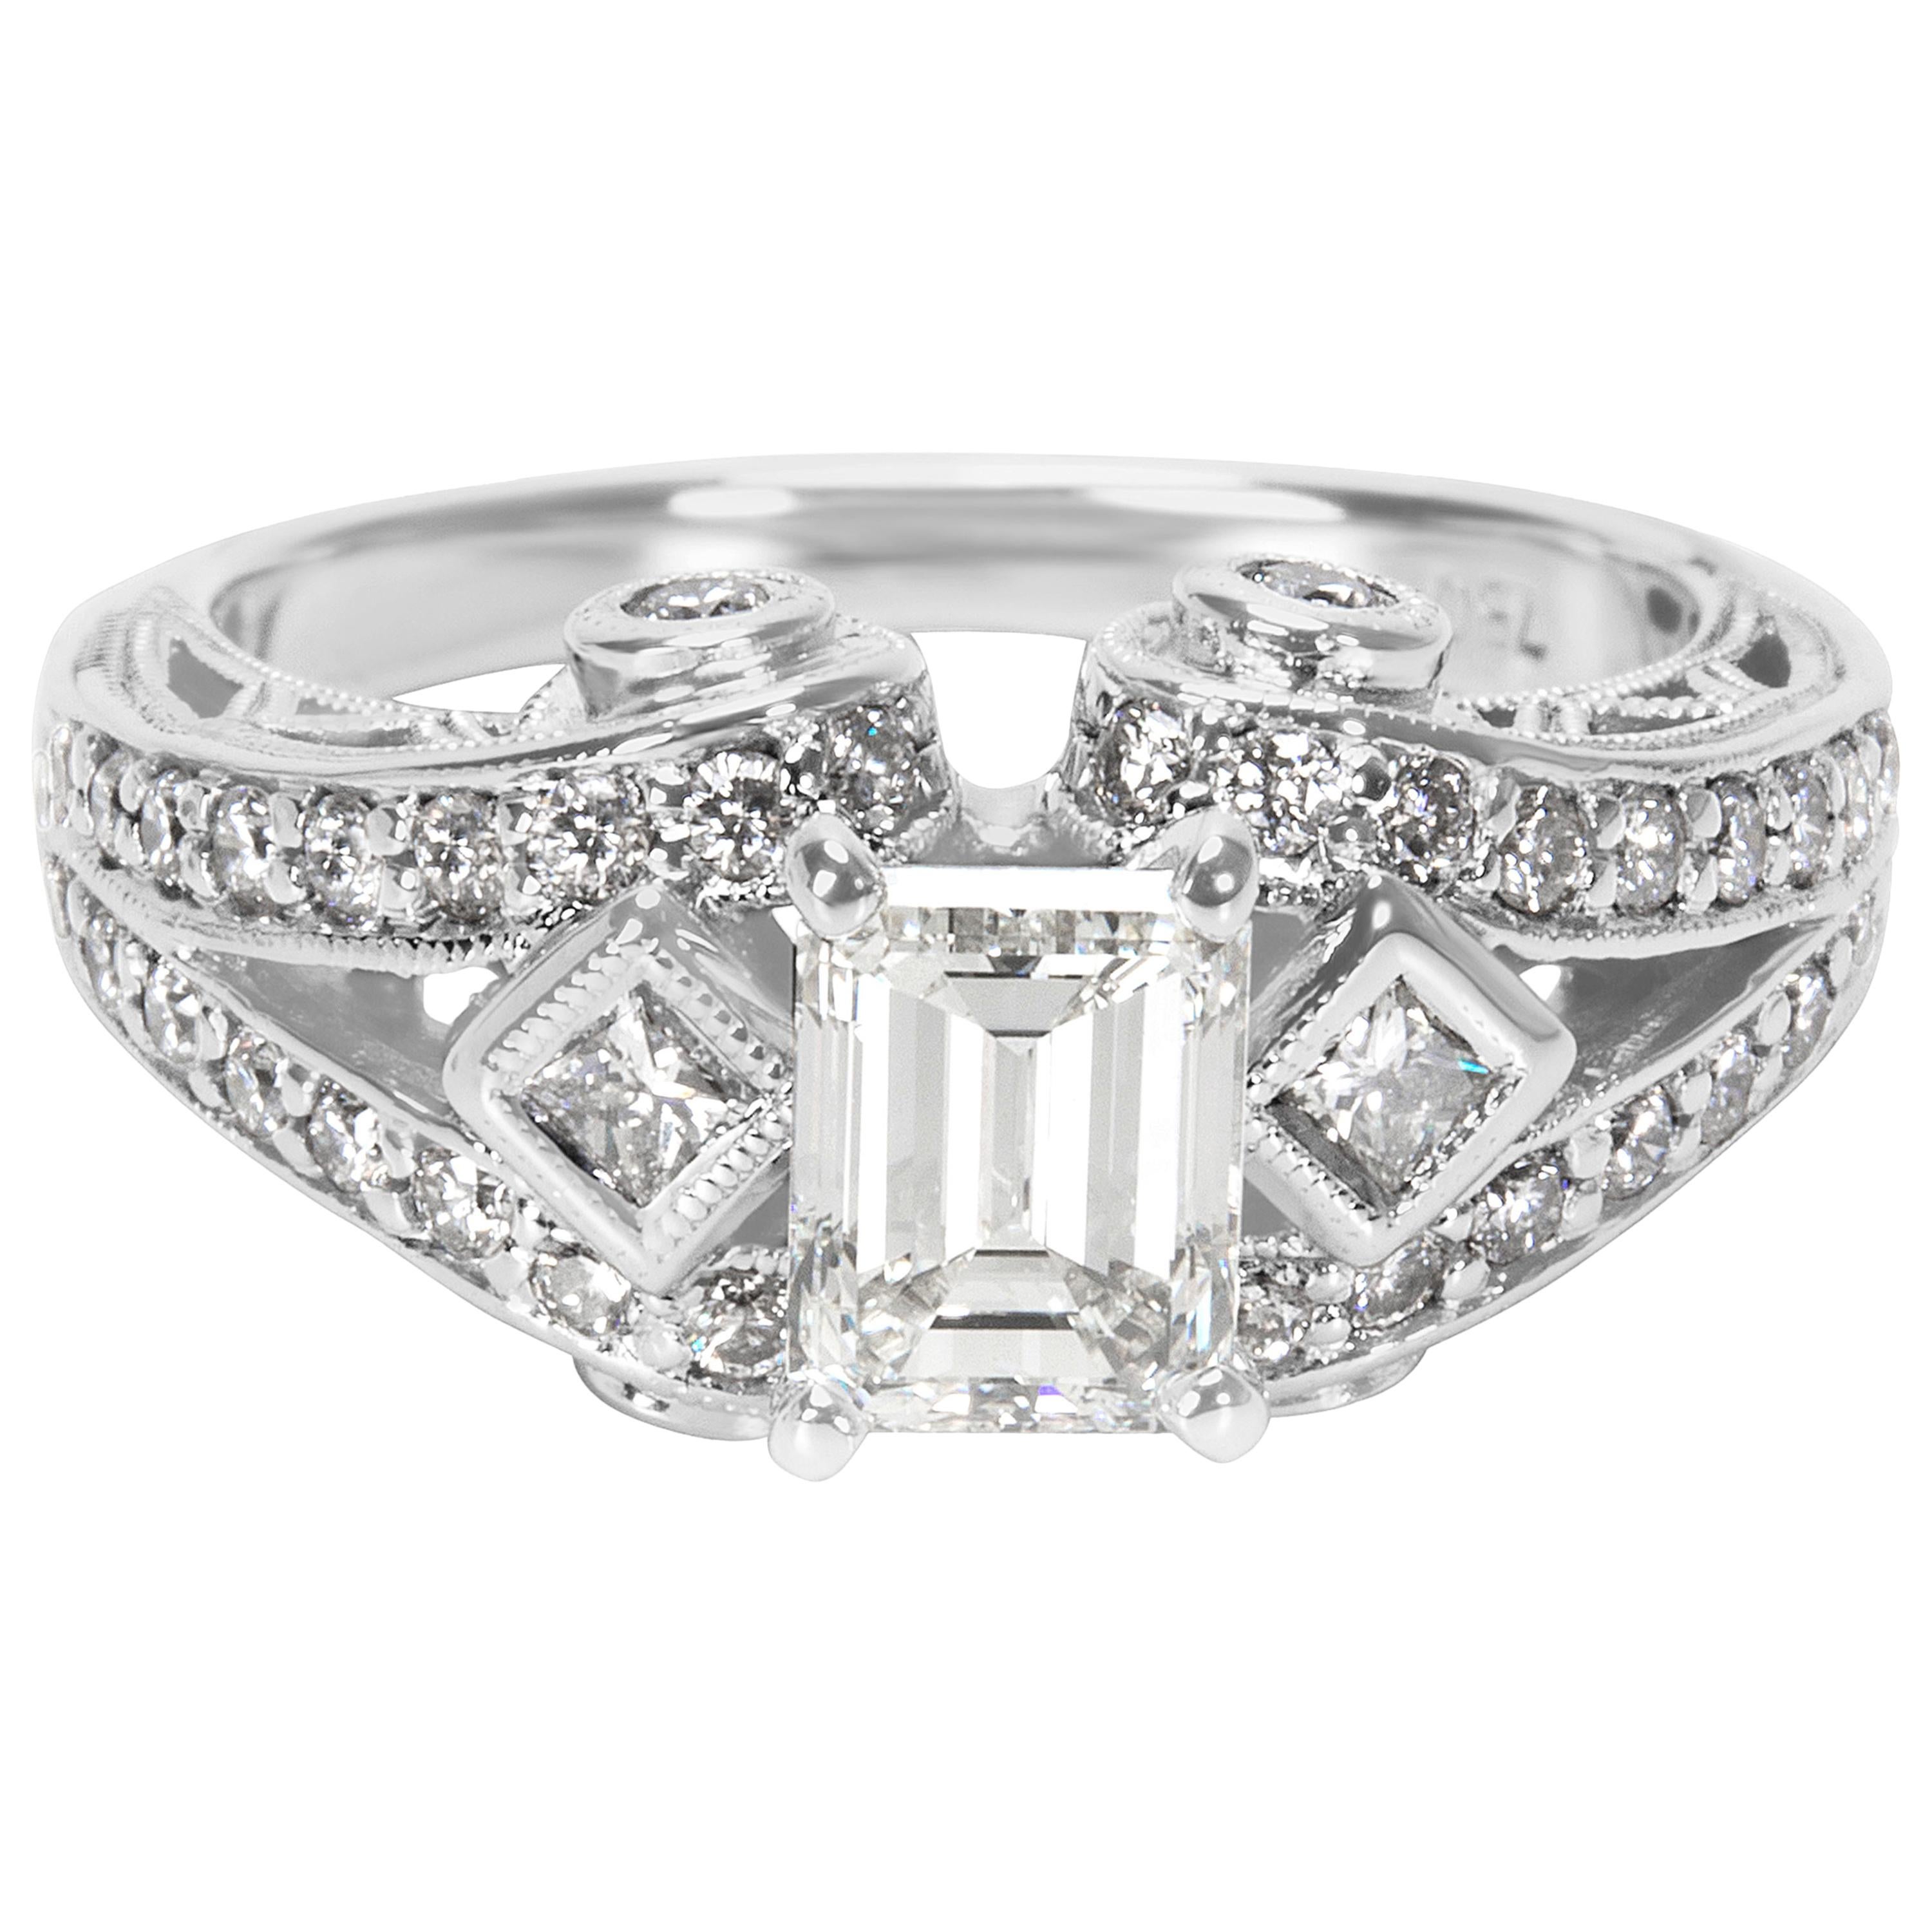 IGI Certified Emerald Cut Diamond Ring in 18 Karat White Gold '1.67 Carat'